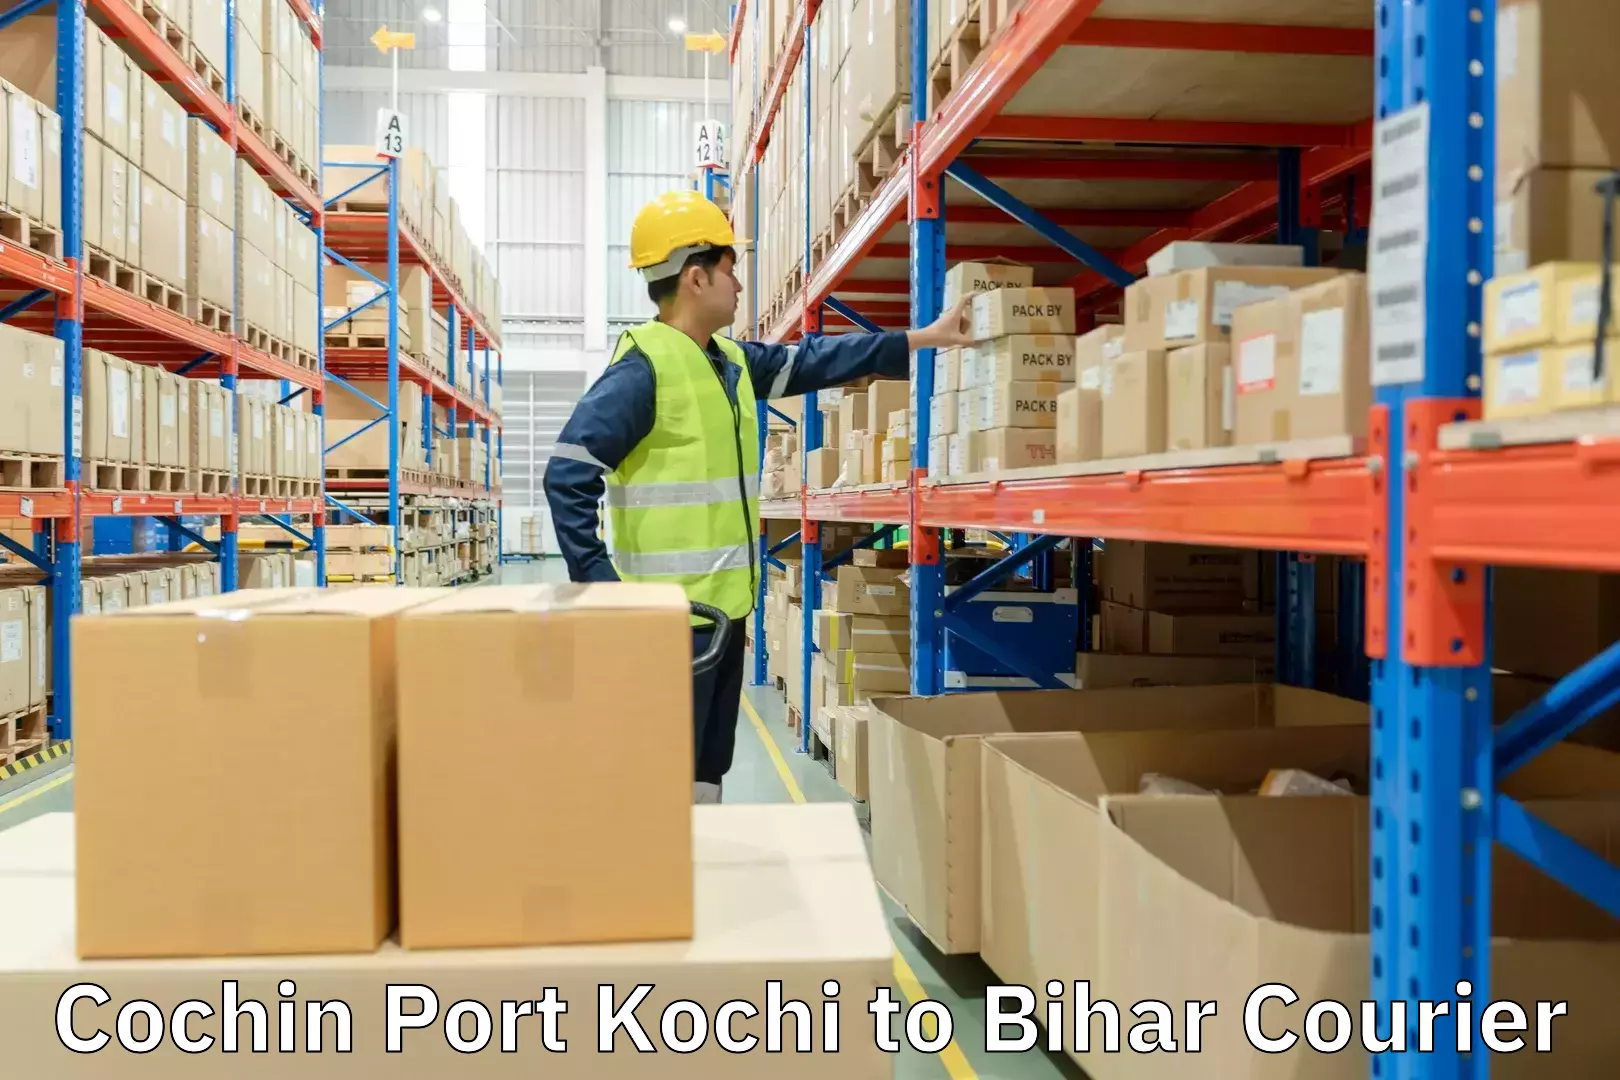 Global logistics network Cochin Port Kochi to Bihar